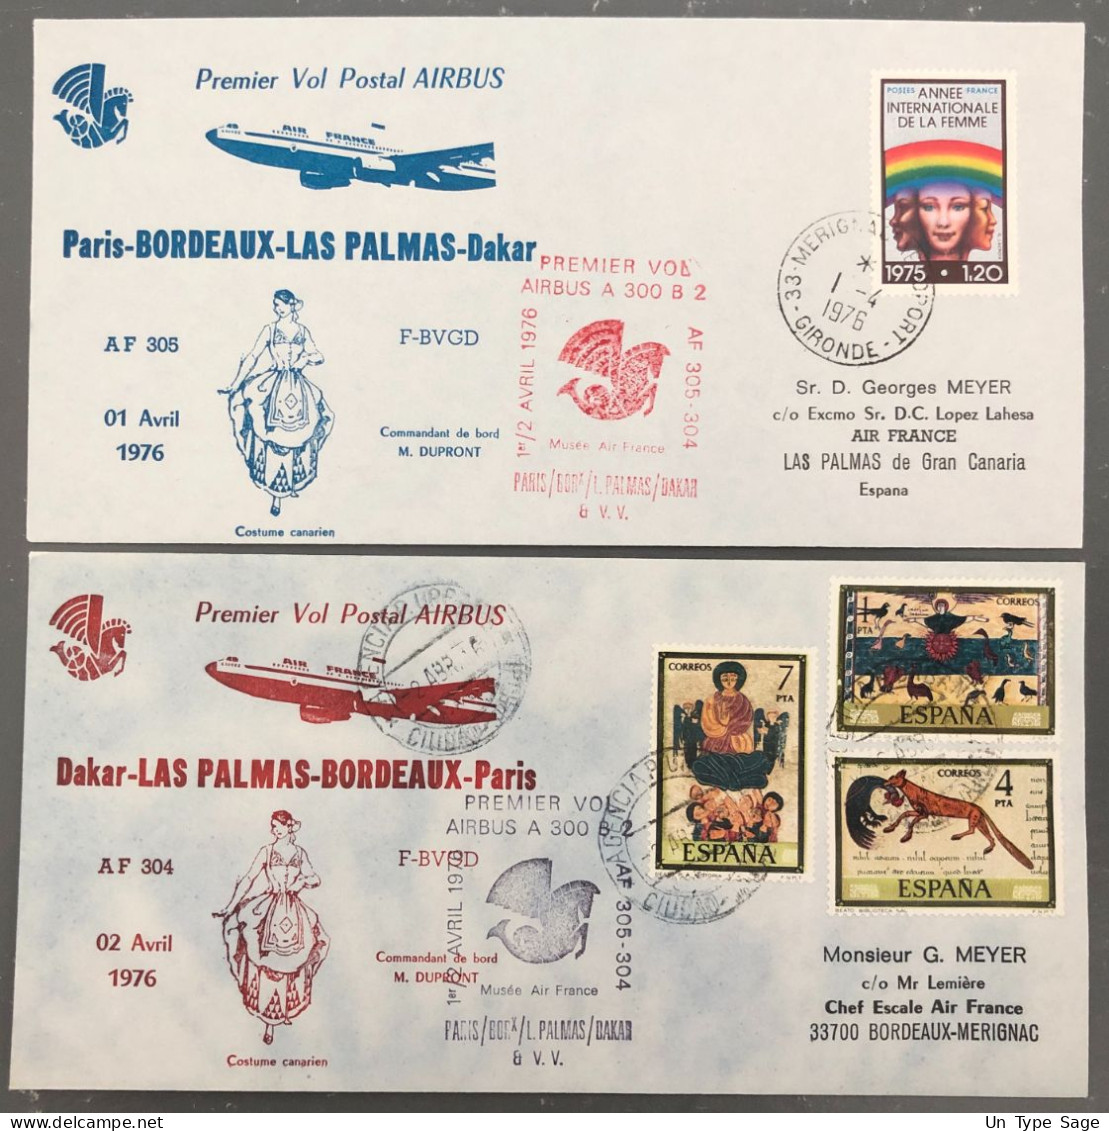 France, Premier Vol (Air France) Paris, Bordeaux, Las Palmas, Dakar 2.4.1976 - 2 Enveloppes - (B1510) - Primi Voli